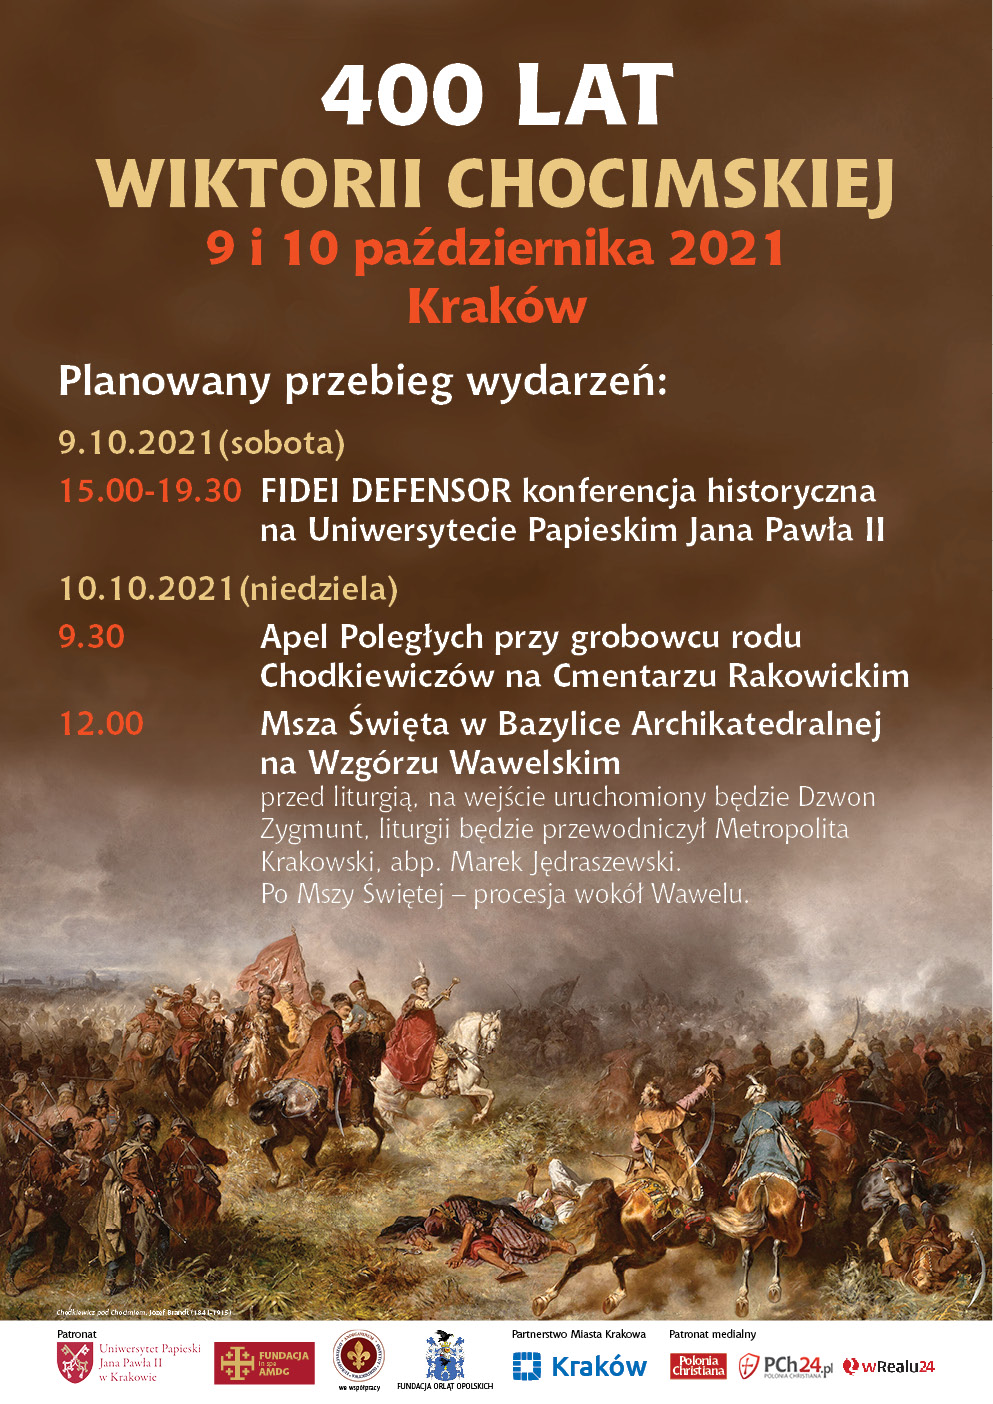 400 lat wiktorii chocimskiej. Konferencja naukowa